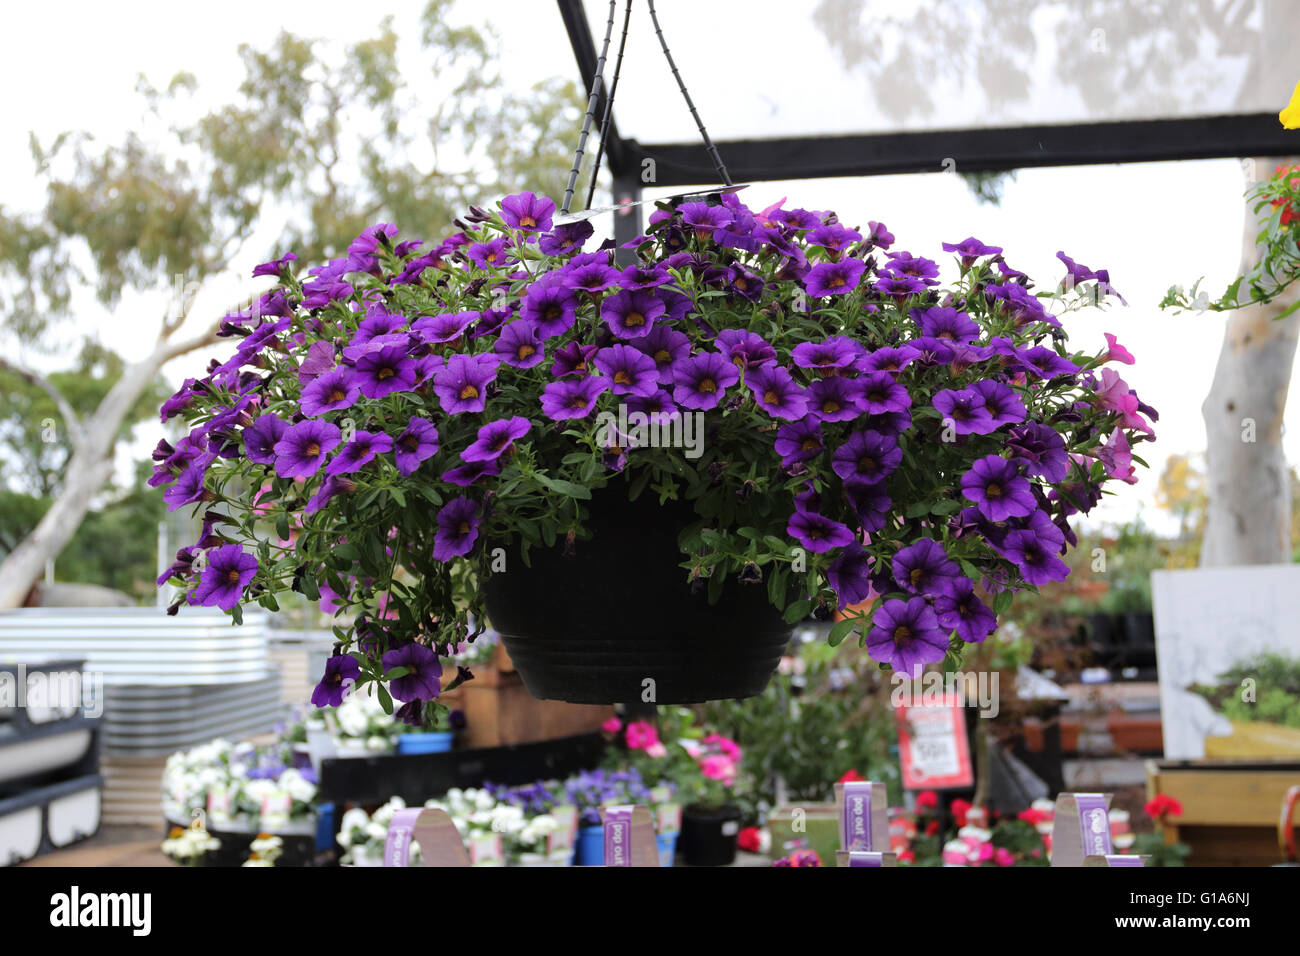 Deep purple Petunia flowers in full bloom growing in hanging basket Stock Photo